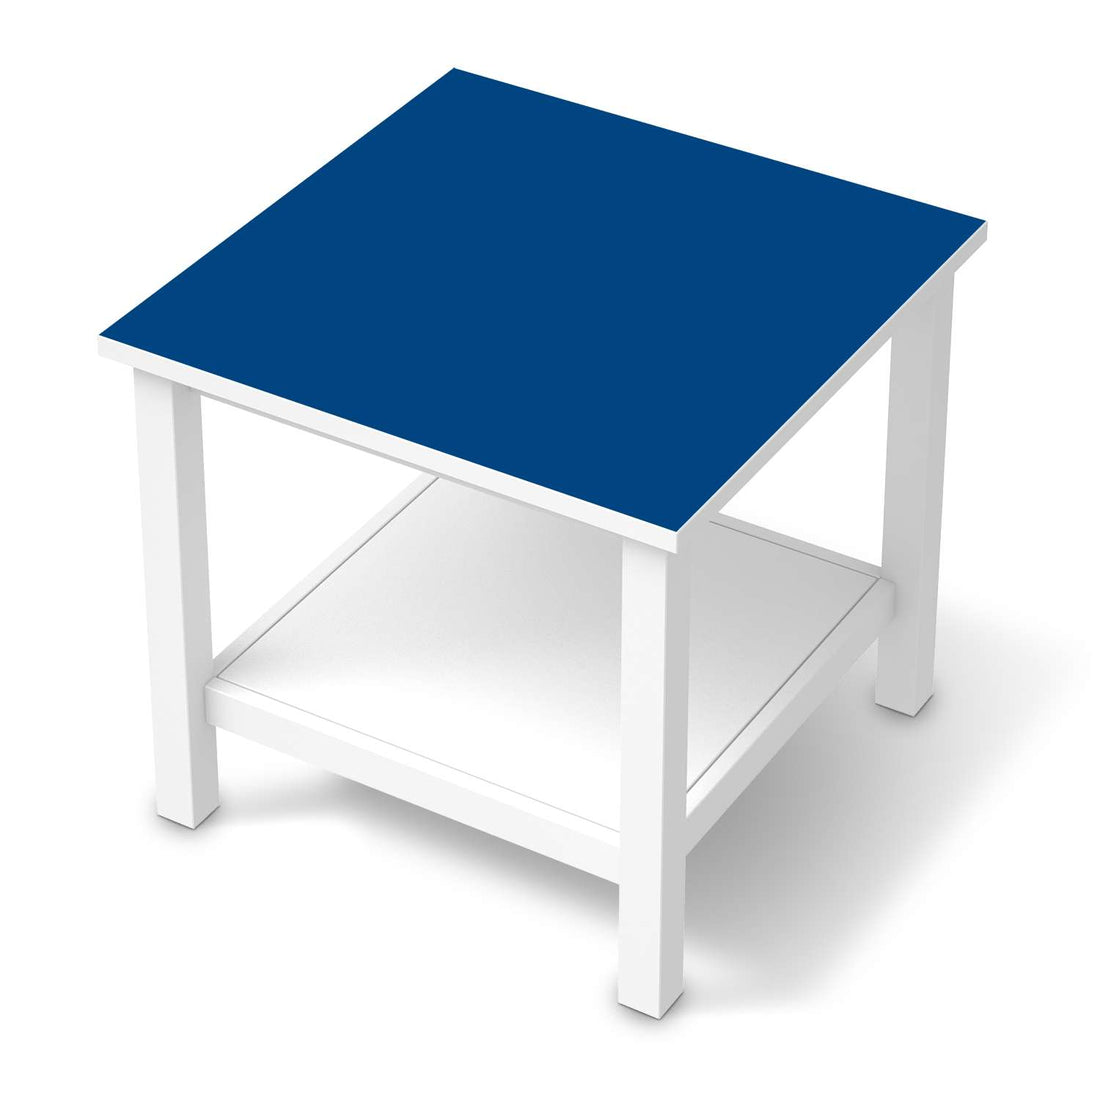 Möbel Klebefolie Blau Dark - IKEA Hemnes Beistelltisch 55x55 cm  - weiss